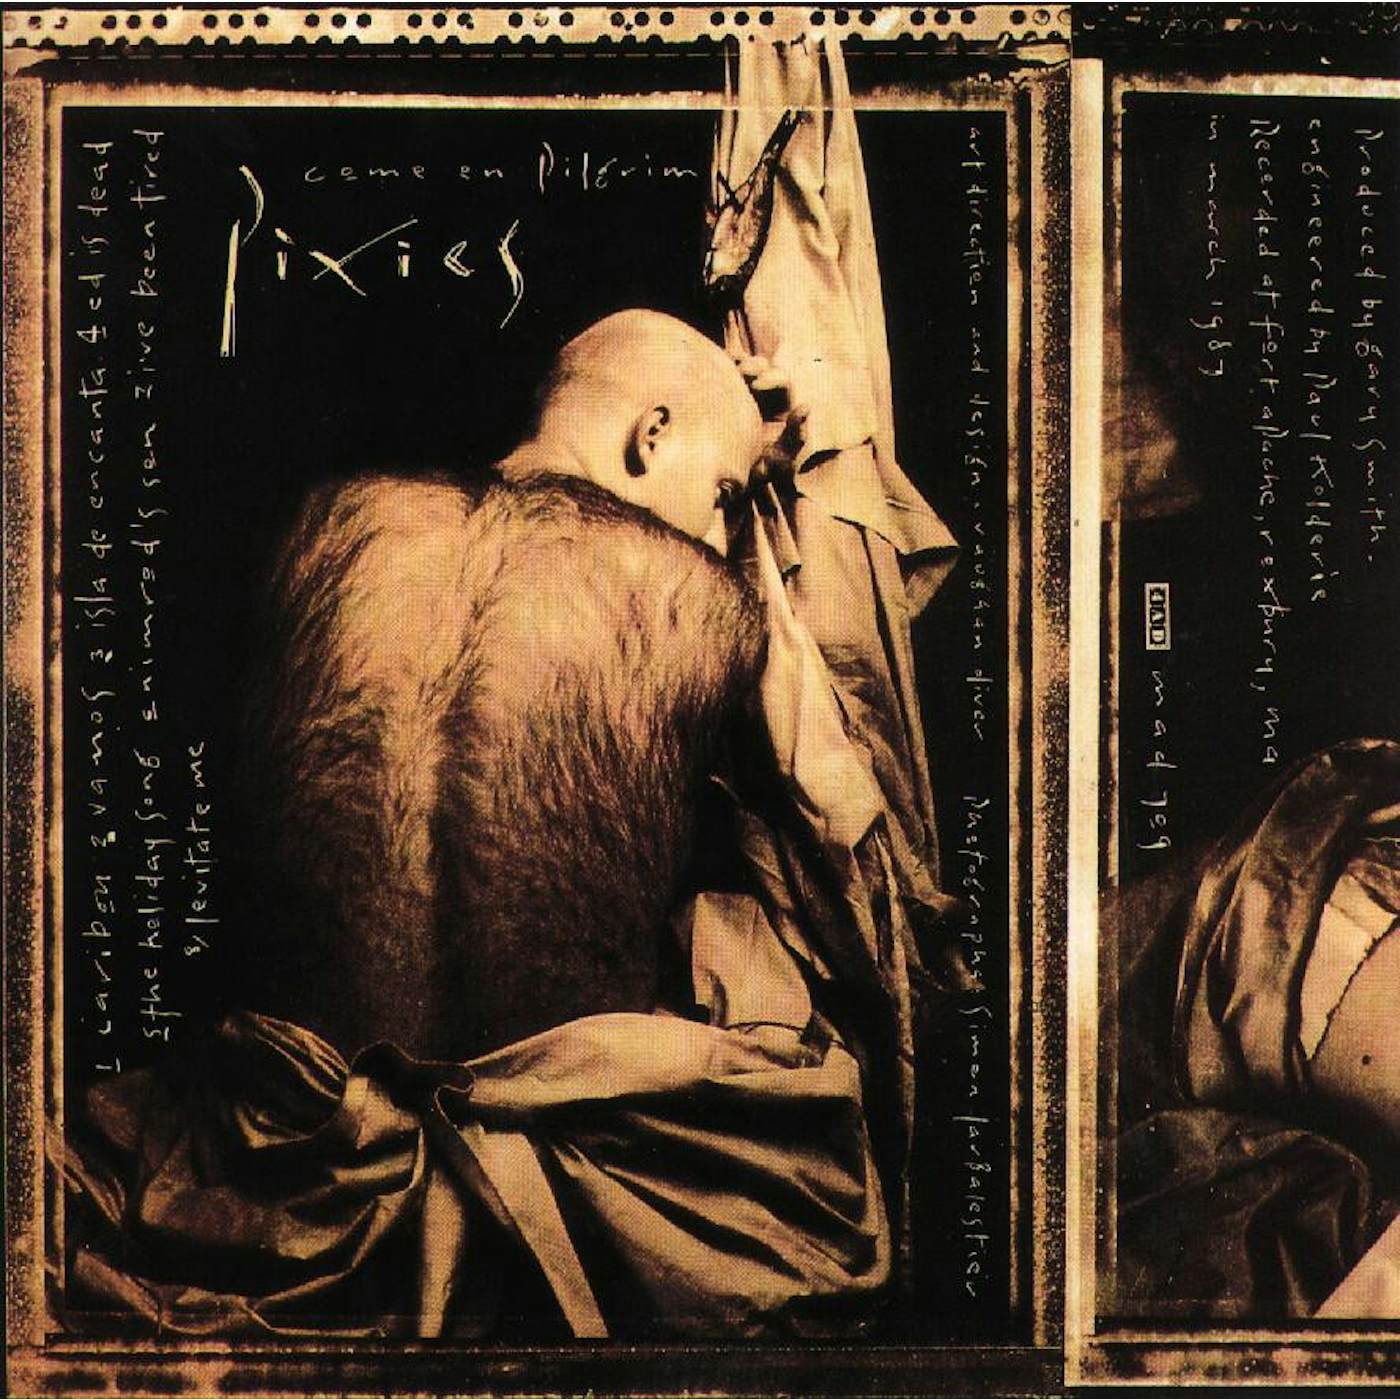 Pixies Come On Pilgrim Vinyl Record